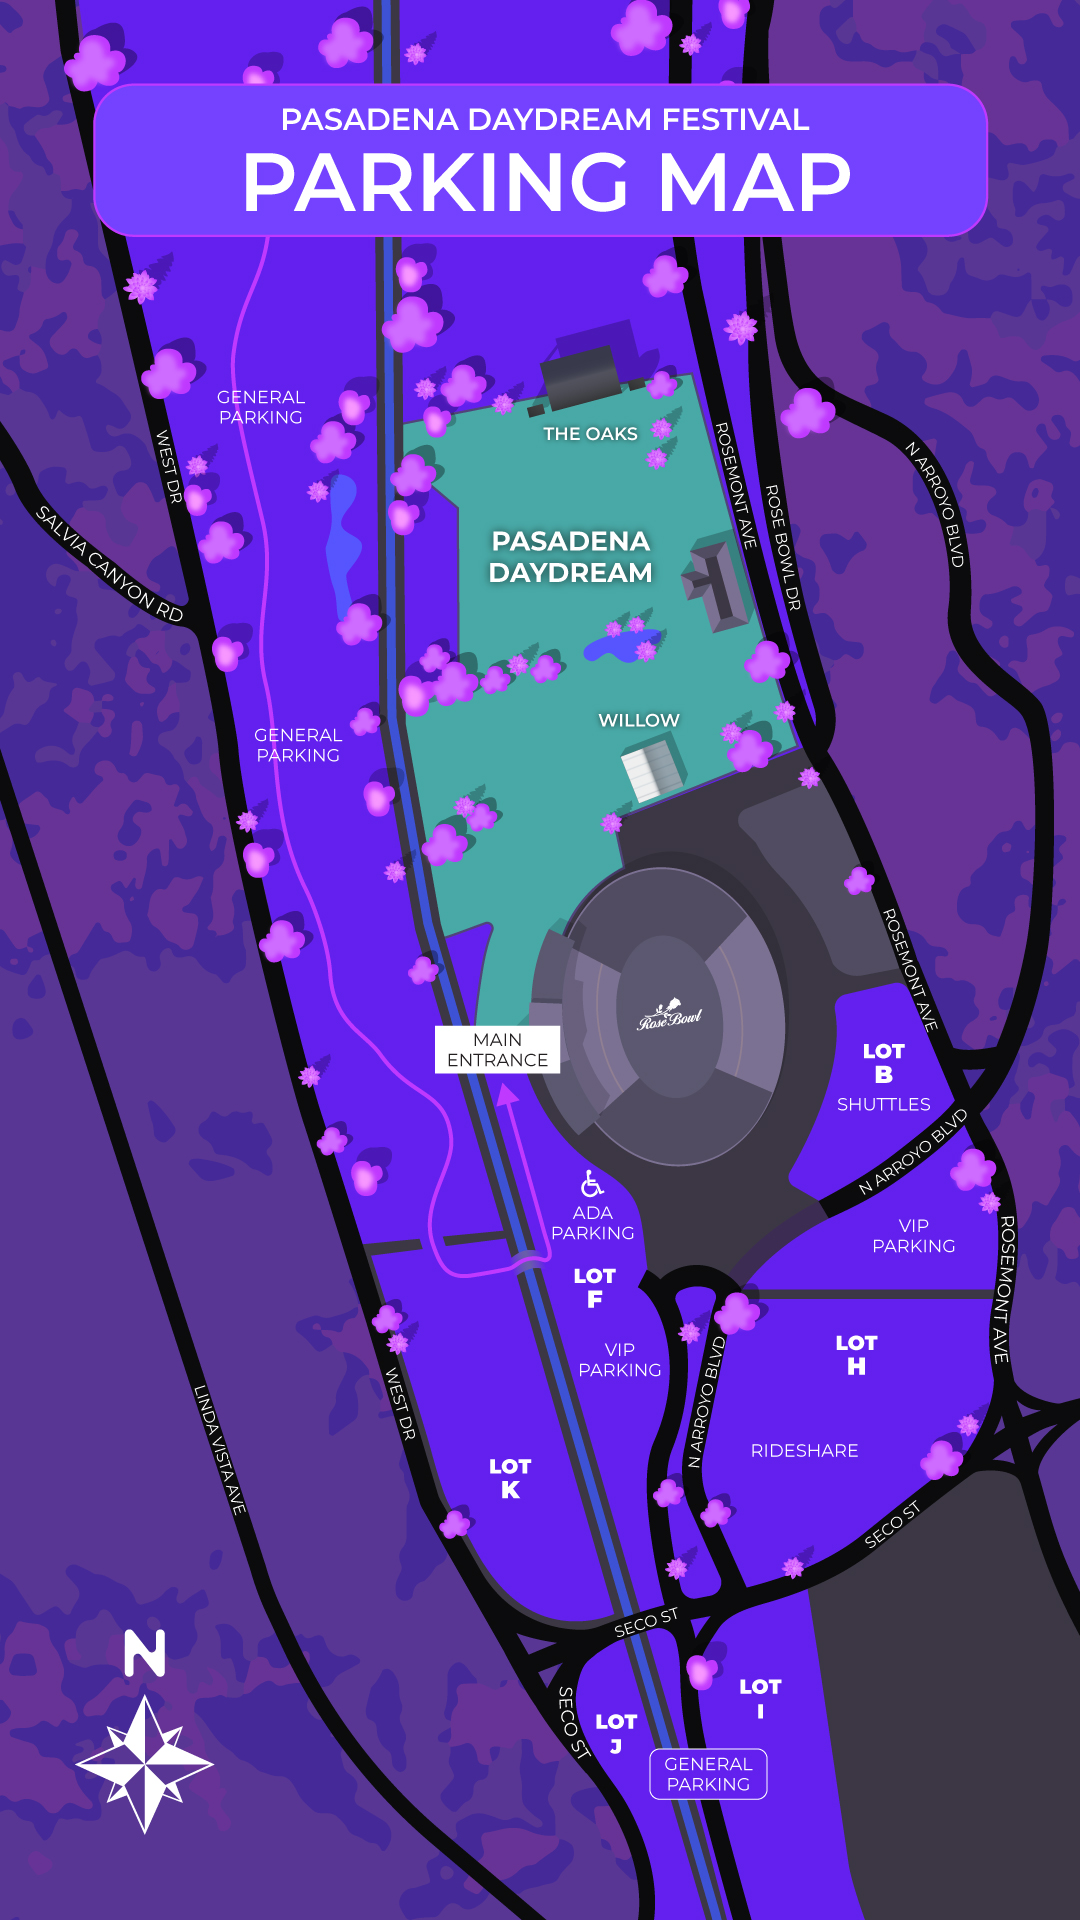 Pasadena Daydream parking map